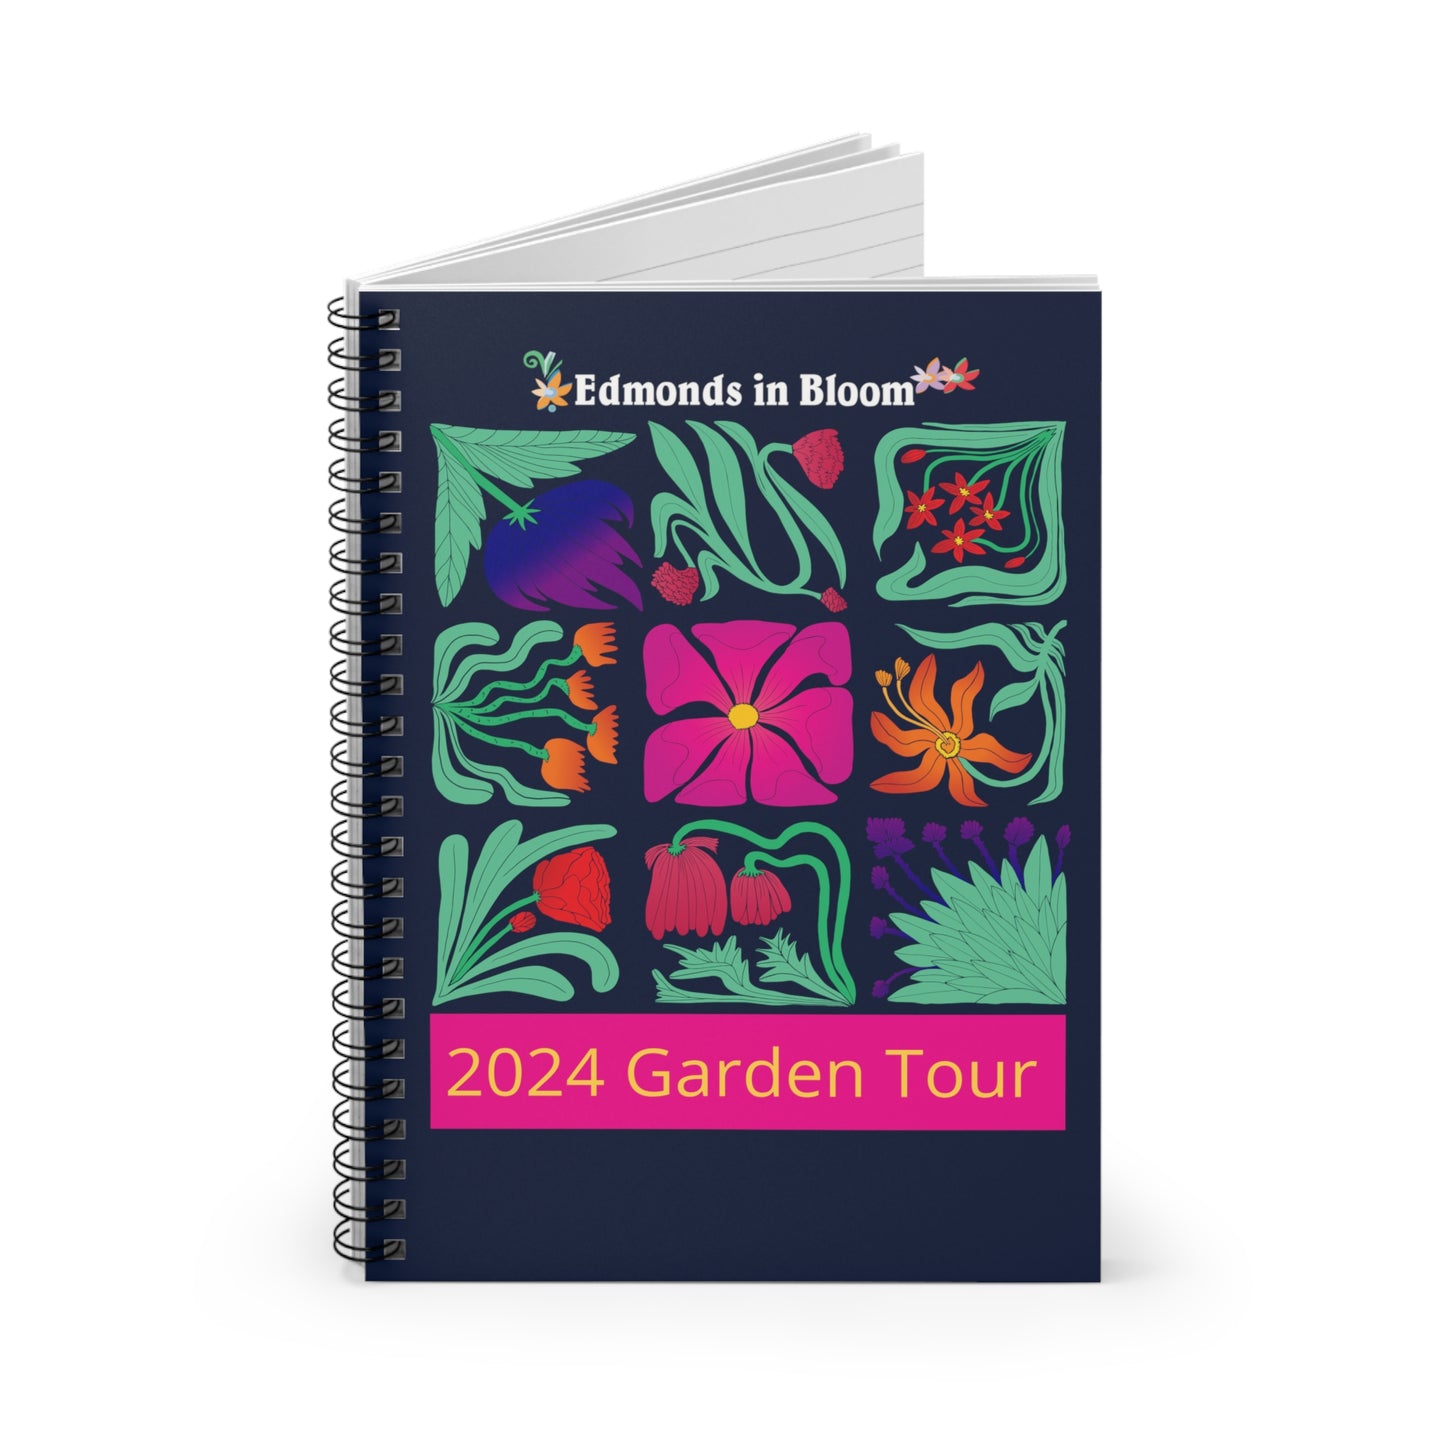 EIB 2024 Garden Tour Floral Blocks Spiral Notebook - Ruled Line